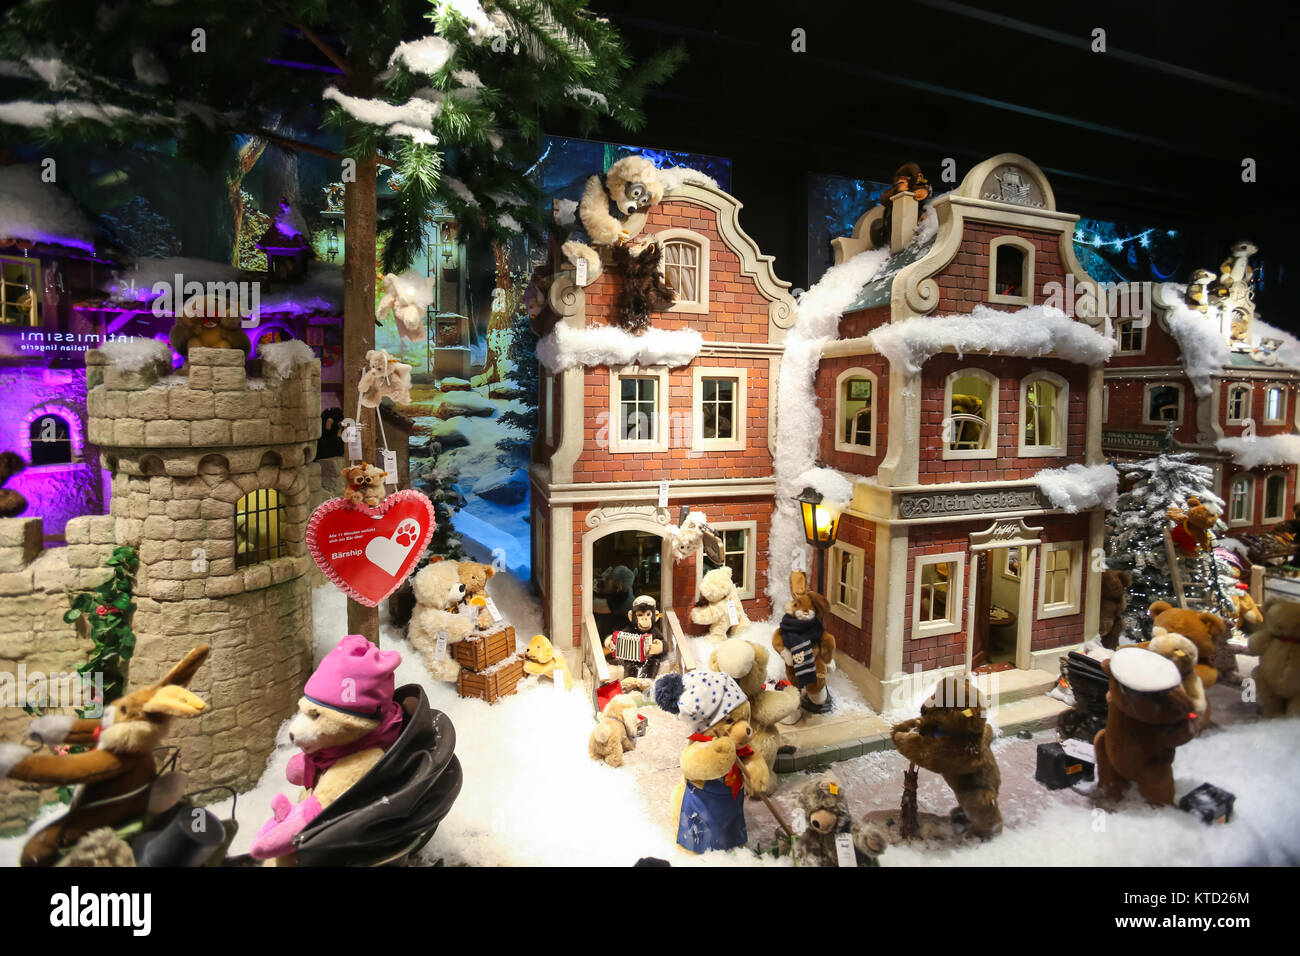 München, Deutschland - Dezember 11, 2017: Die Schaufenster der Galeria  Kaufhof verziert mit Spielzeug im Winter Stil in der Nacht in München,  Deutschland Stockfotografie - Alamy